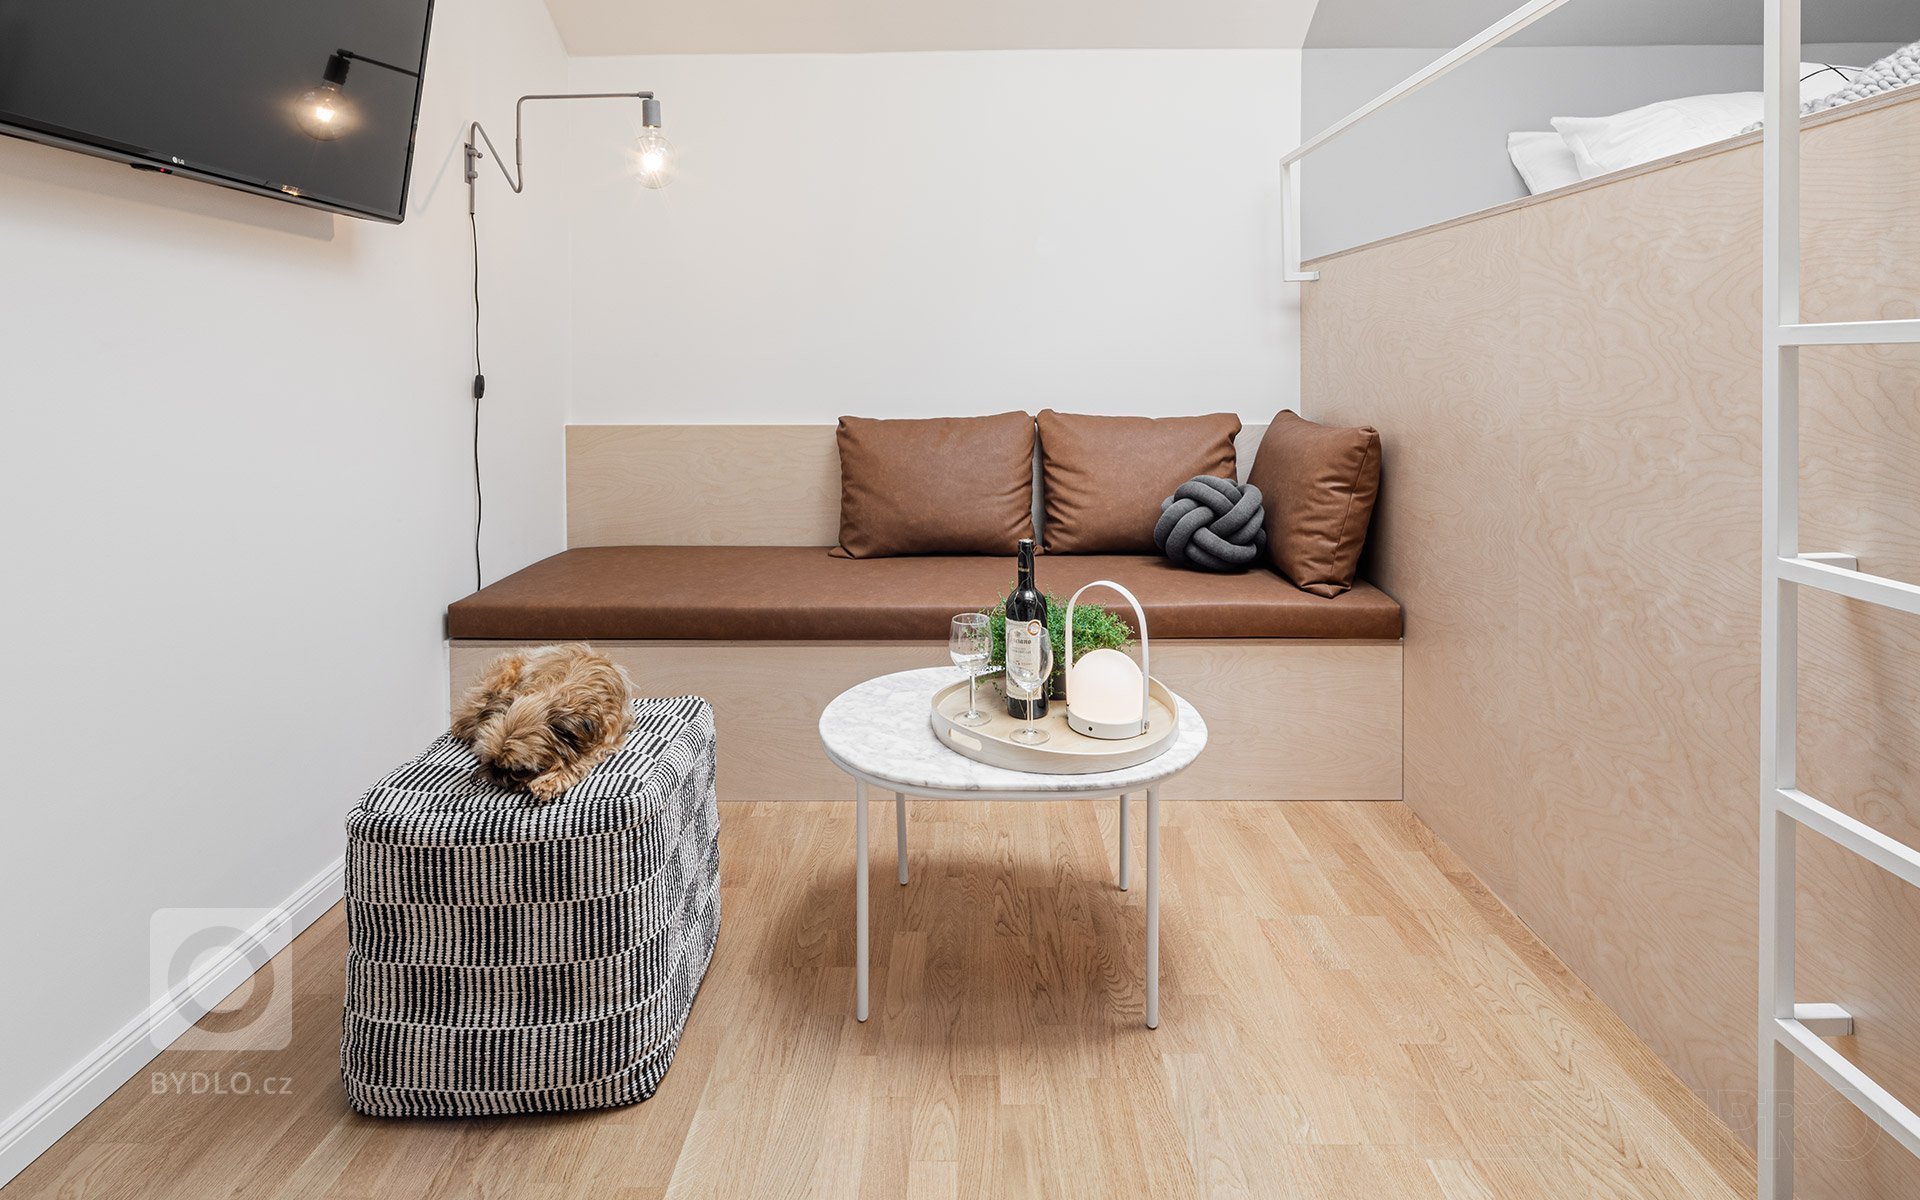 Interiér podkrovního bytu v centru Prahy v ulici Štěpánská. Malý byt na krátkodobý pronájem, o velikosti pouhých 23 metrů čtverečních, jsme navrhovali a…